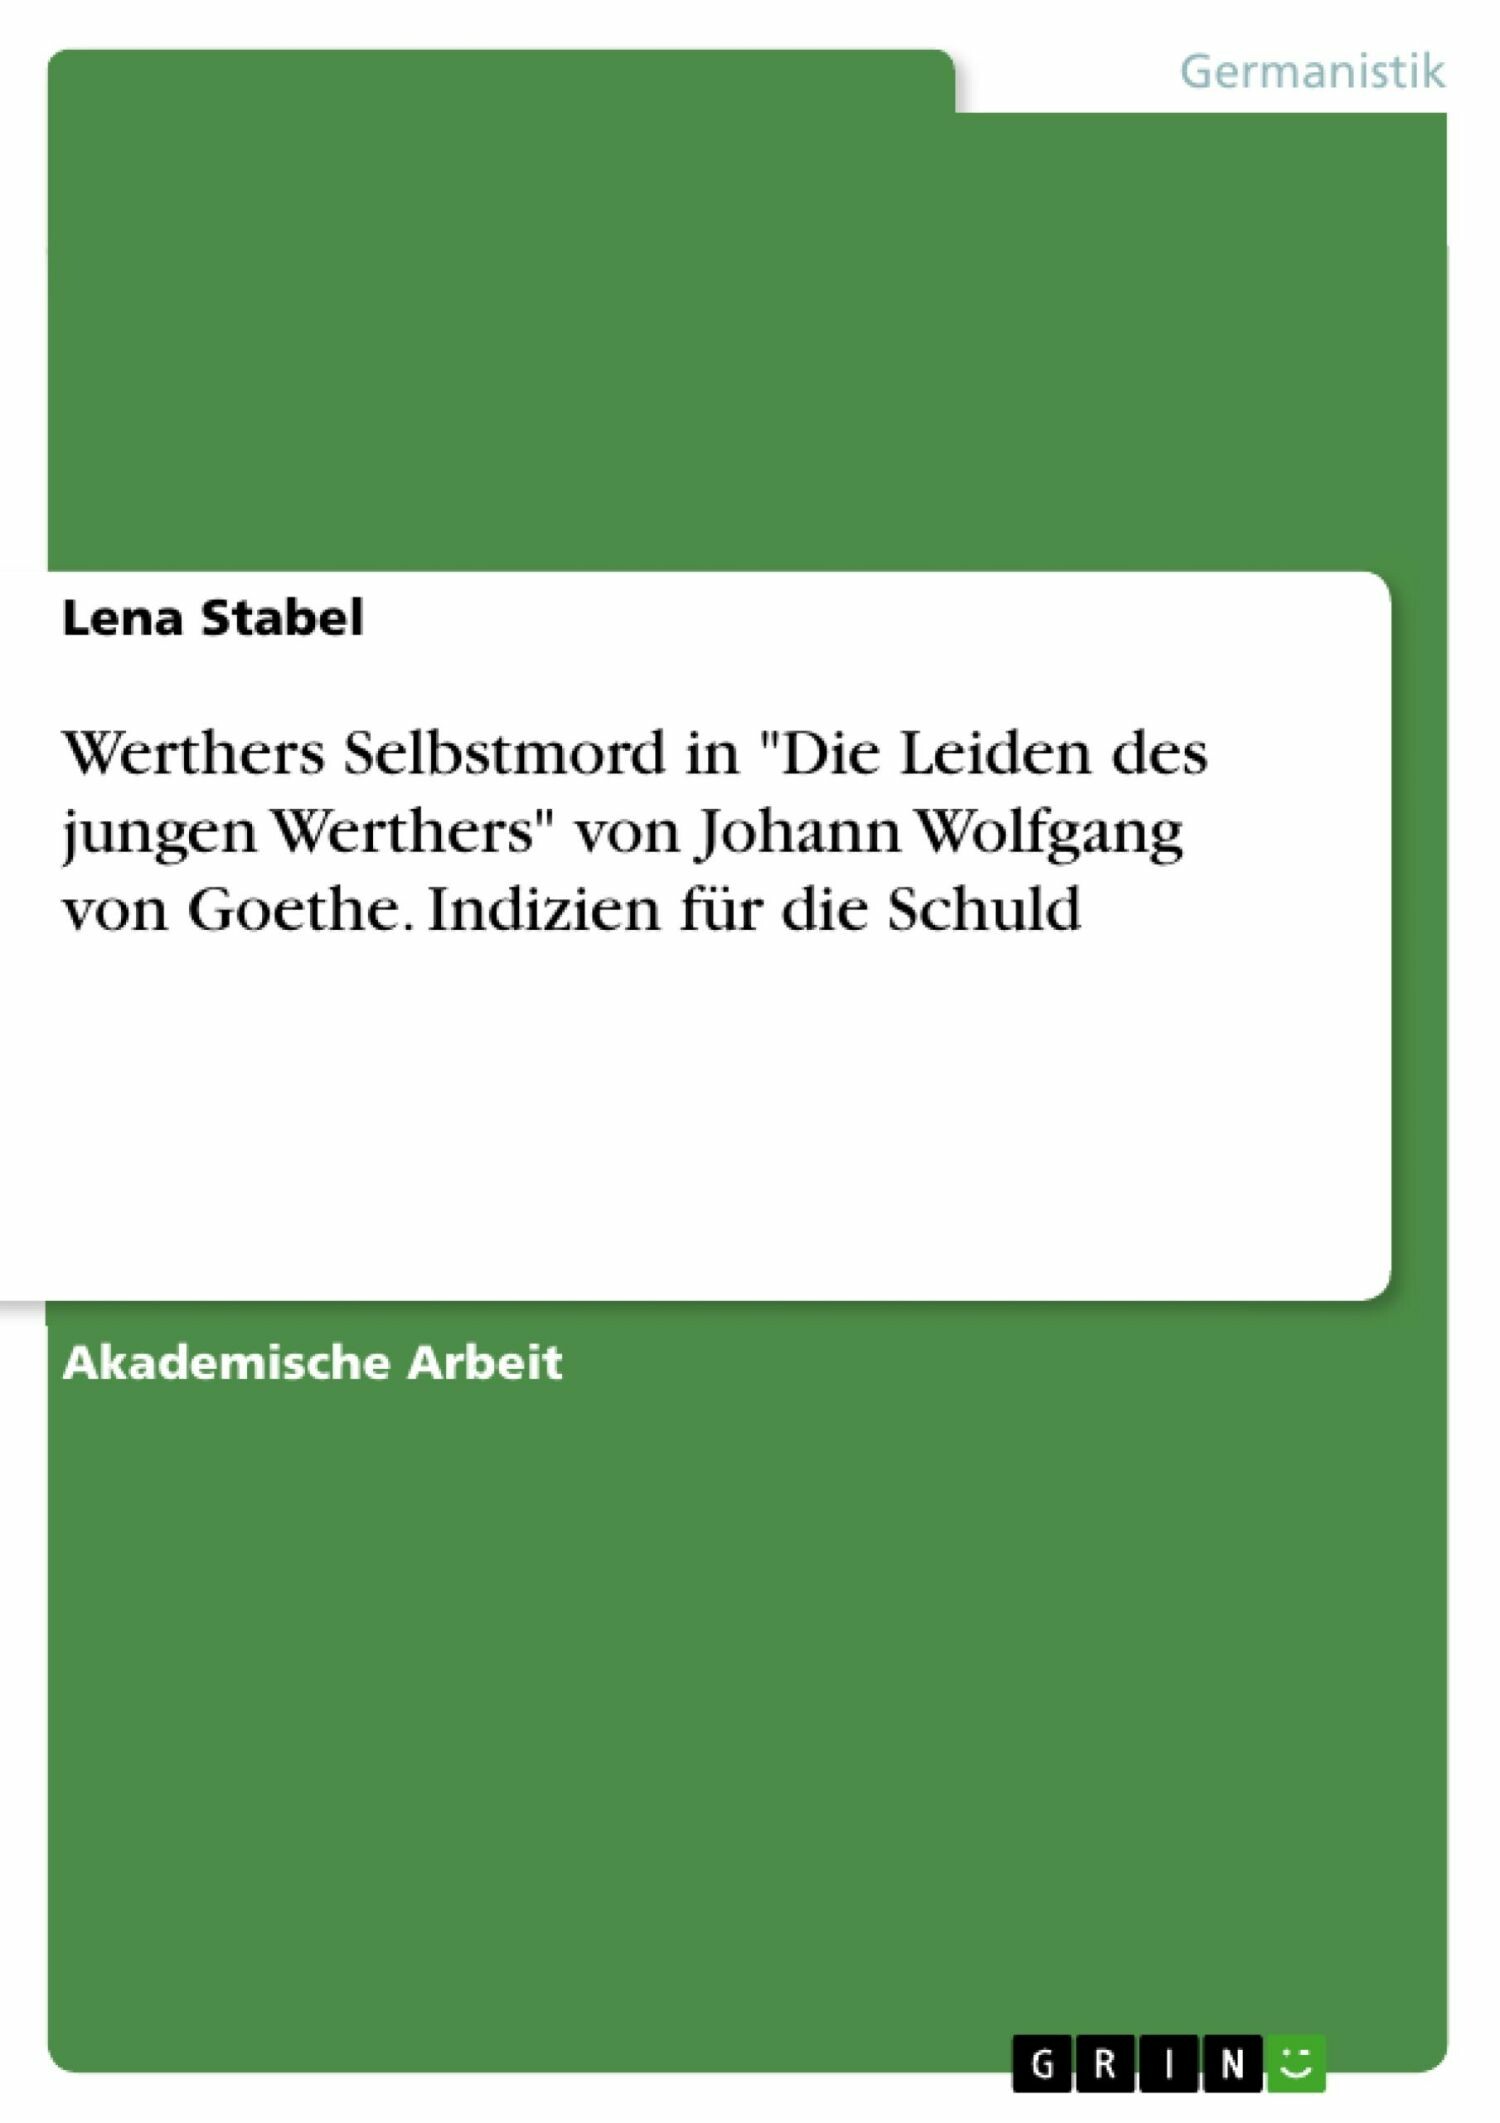 Werthers Selbstmord in 'Die Leiden des jungen Werthers' von Johann Wolfgang von Goethe. Indizien für die Schuld